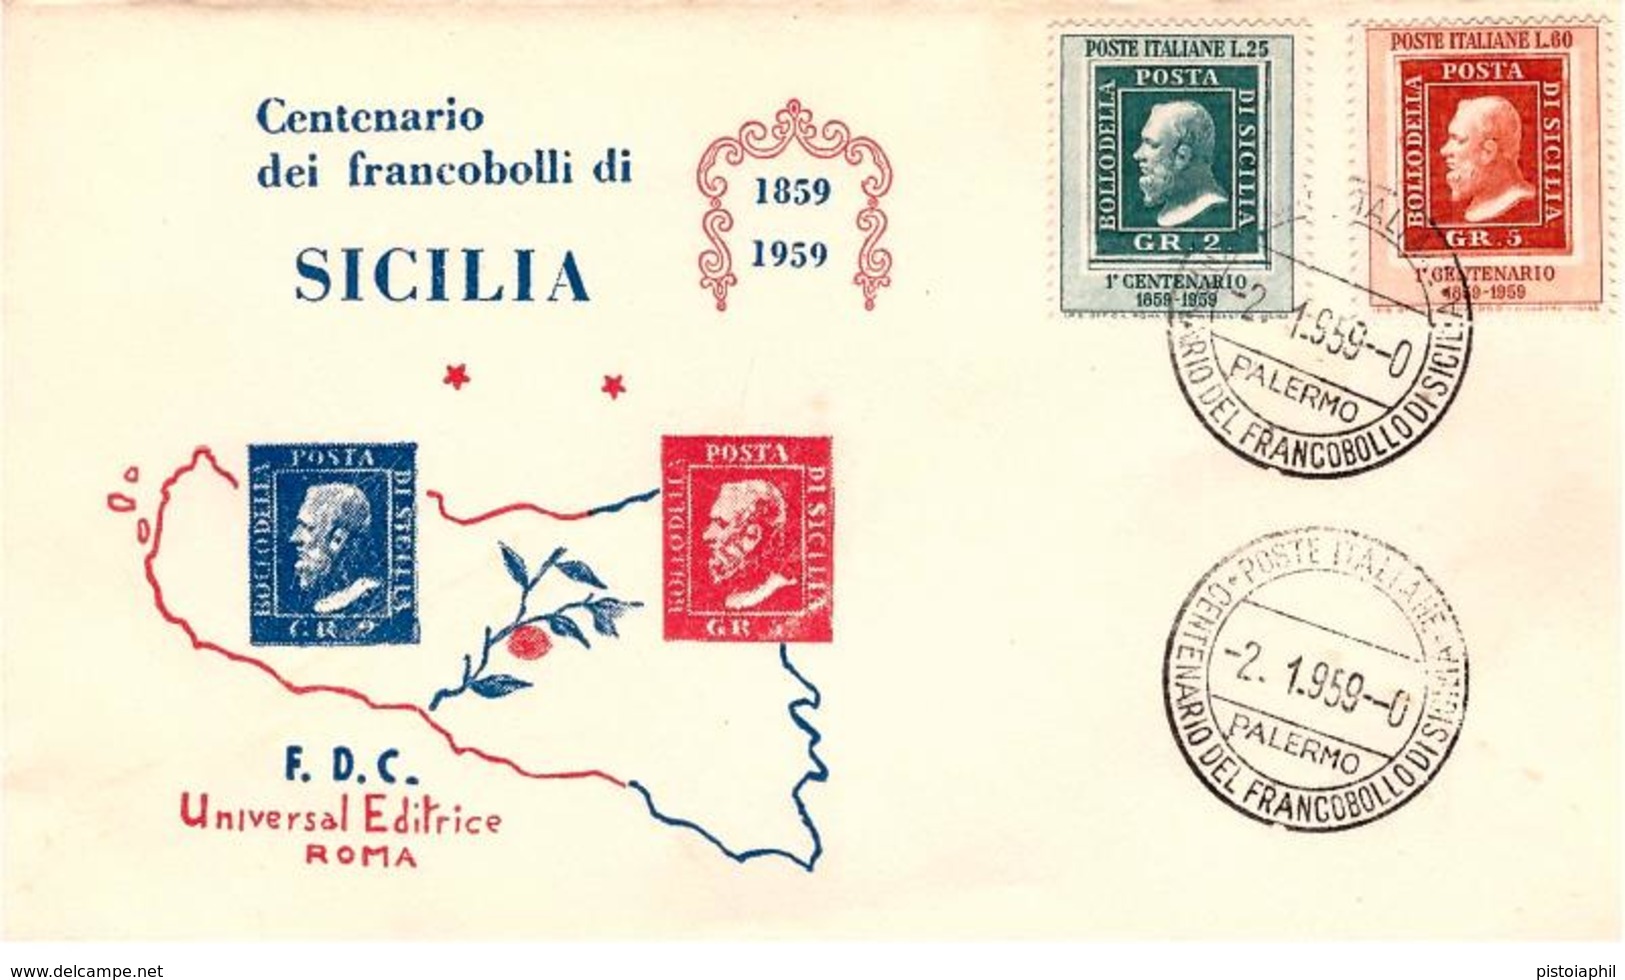 Fdc Universal Editrice : 100° FRANCOBOLLI DI SICILIA (1959);no Viaggiata; AS_Palermo - FDC